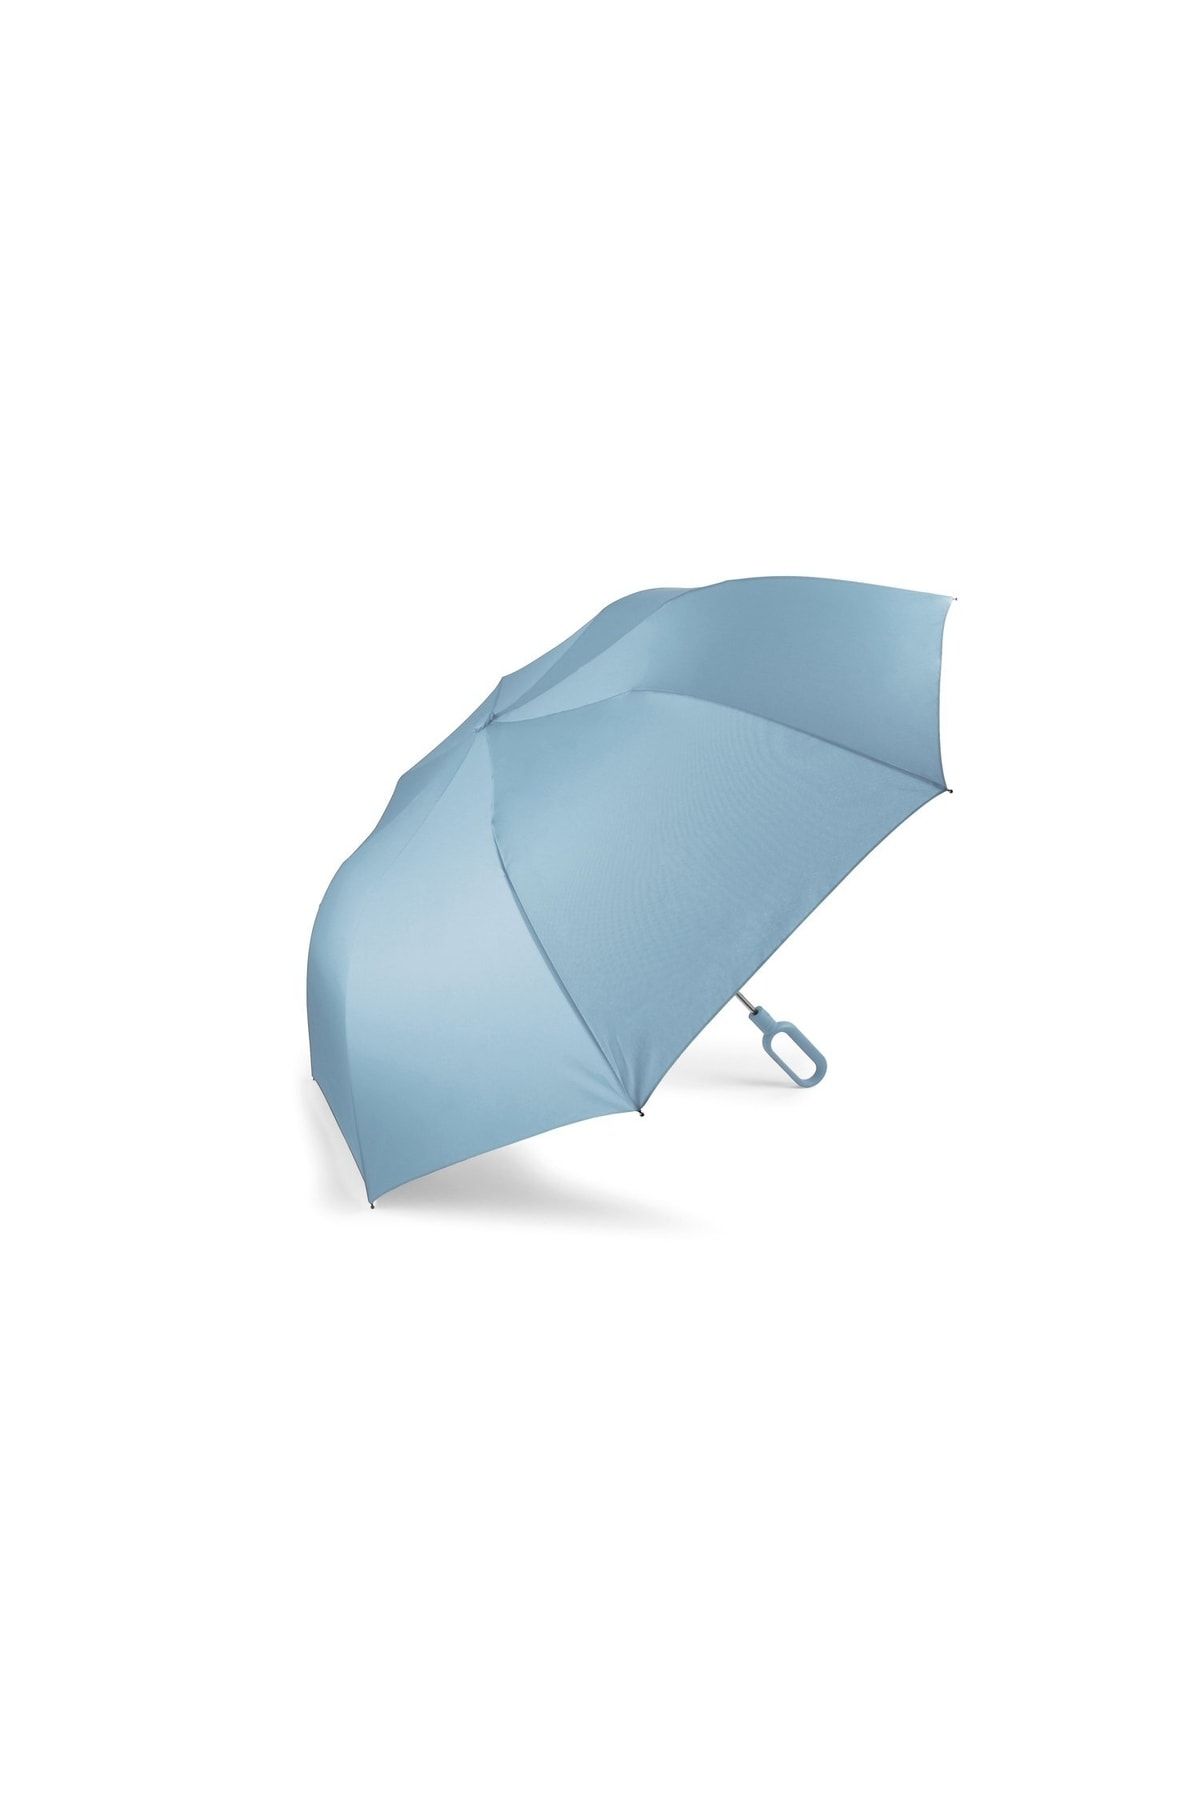 Genel Markalar Mini Hook Şemsiye Açık Mavi